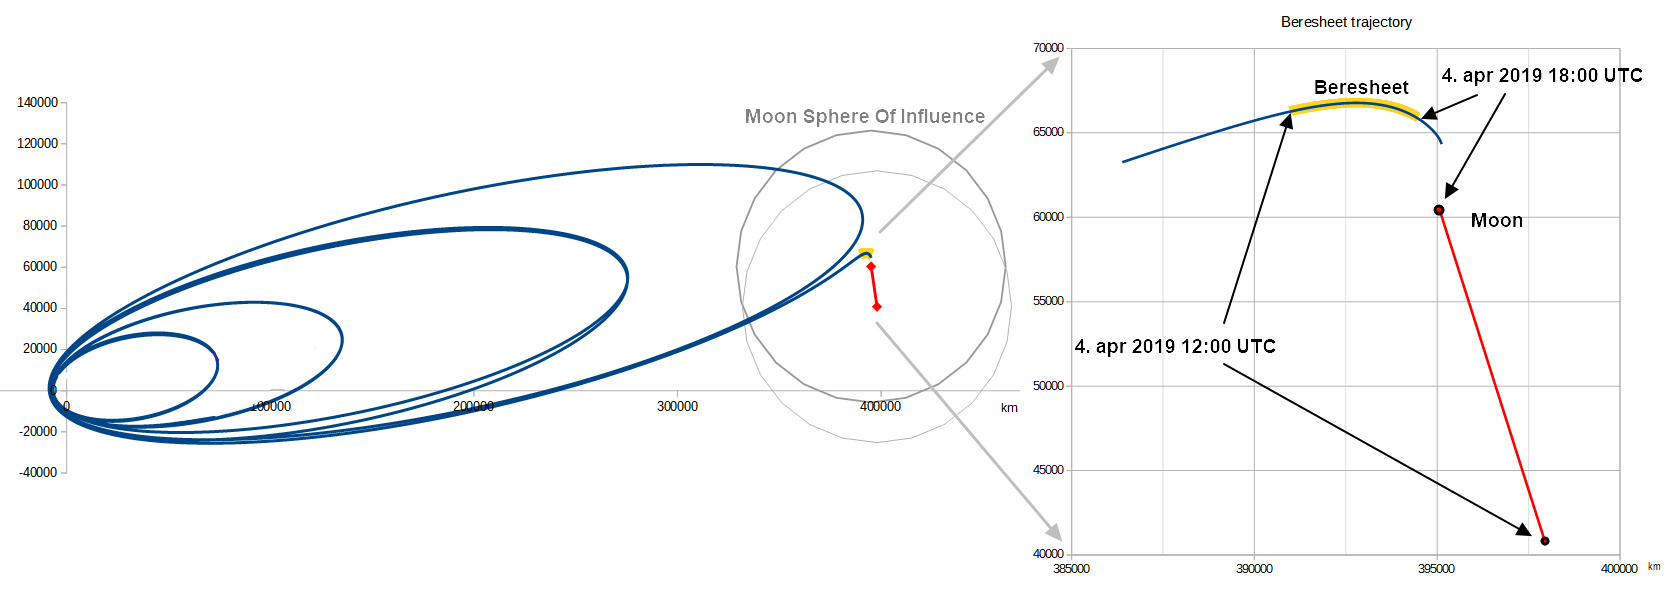 Лунная миссия «Берешит» — 4 апреля 2019 совершен переход на лунную орбиту, впереди 7 дней полета, 6 маневров и 1 посадка - 67